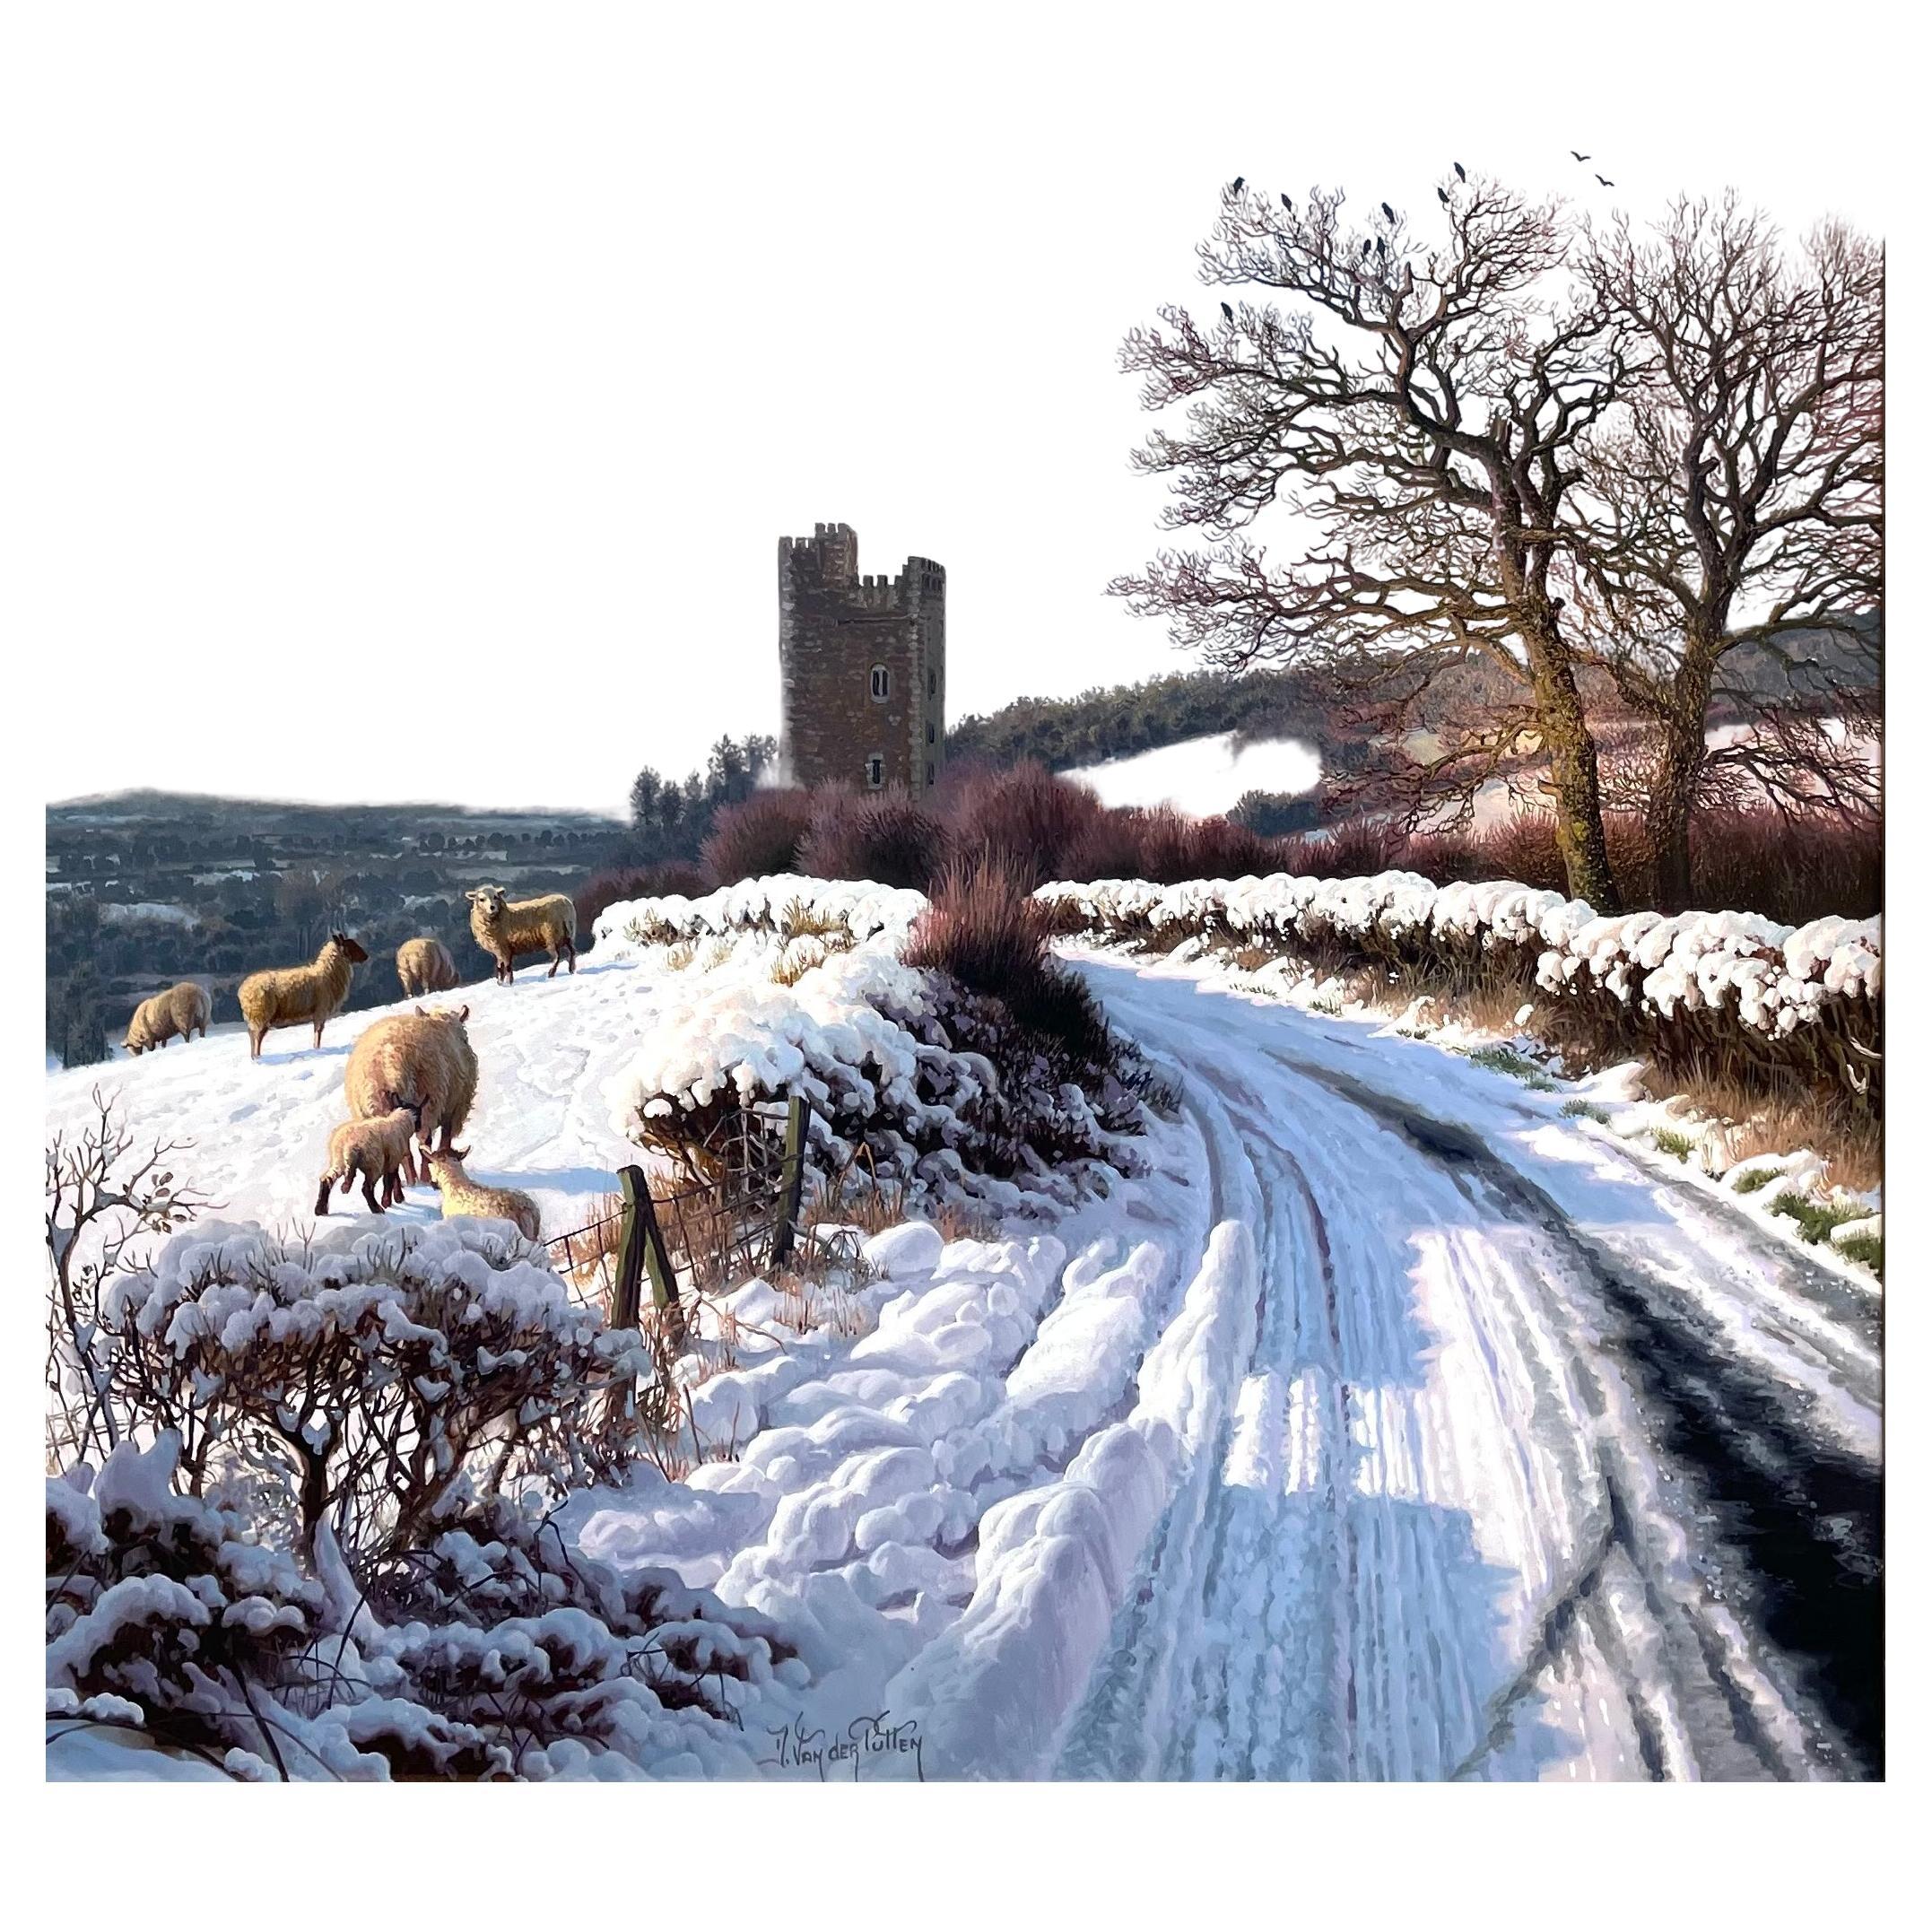 Superbe peinture de Daniel Van der Putten, représentant une magnifique scène de neige rurale, un chemin de terre enneigé avec un troupeau de moutons sur la gauche et une vue de Glenquin Castle Killeedy County Limerick Ireland, dans le lointain.